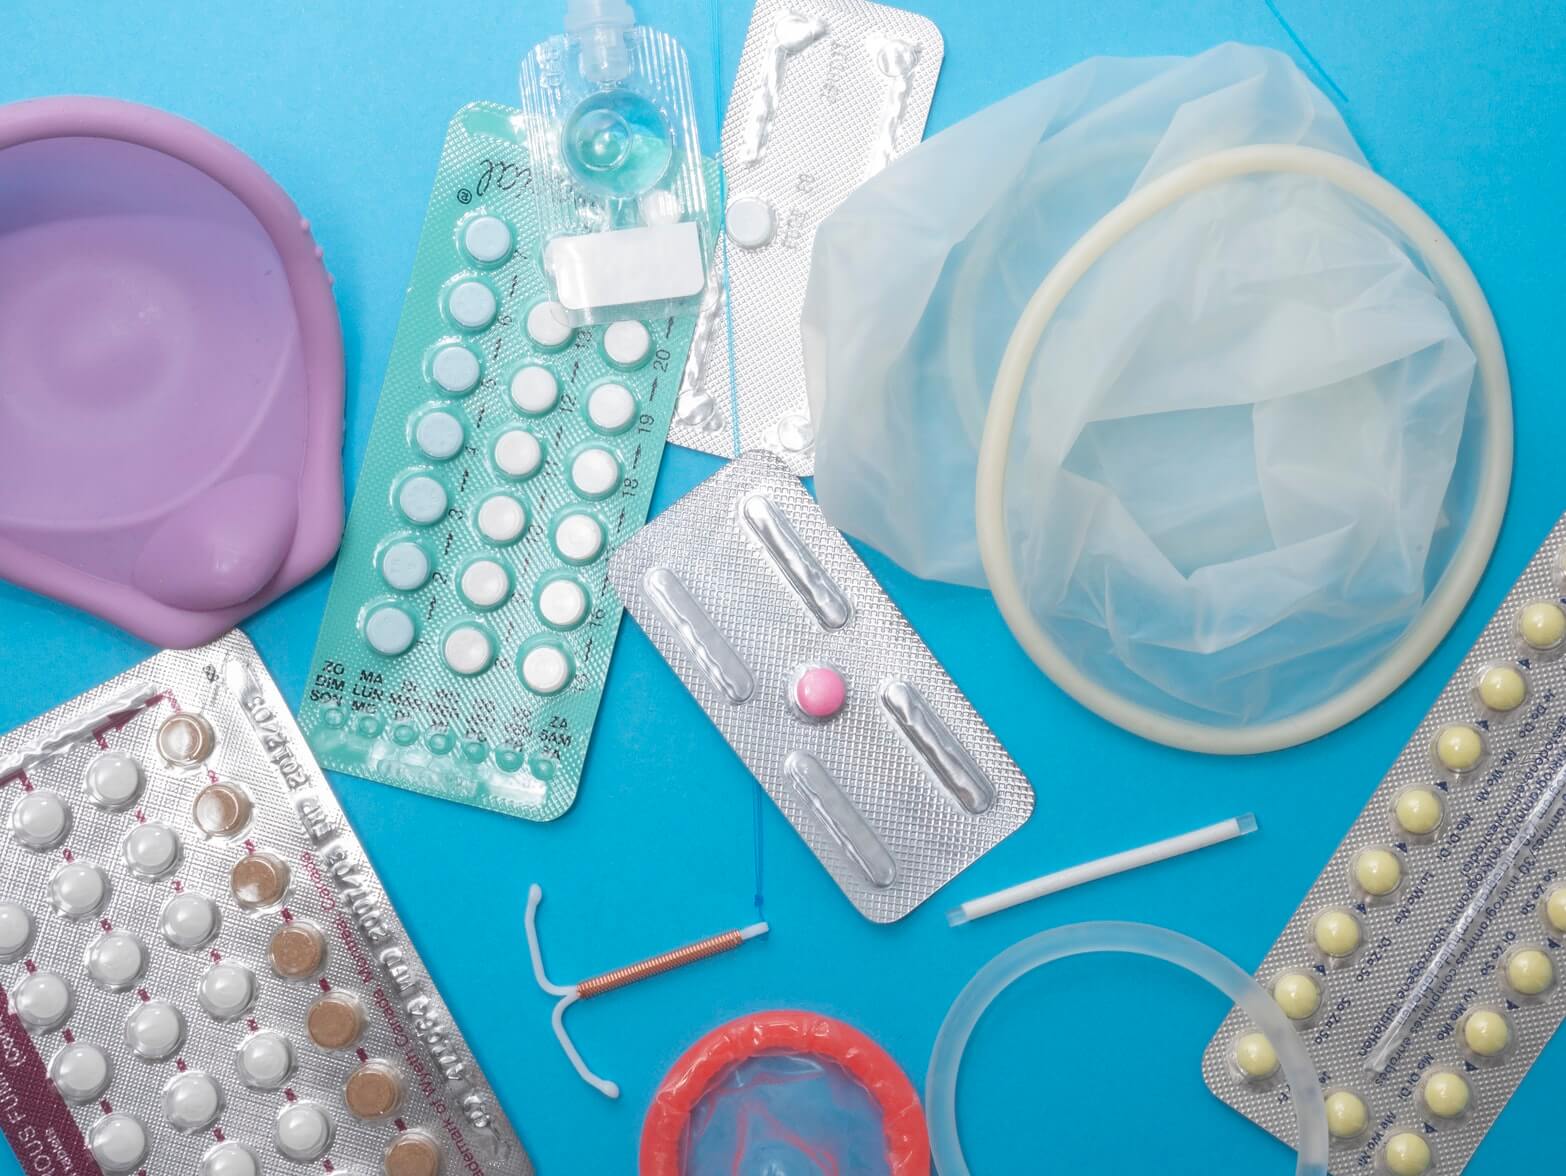 Contraception Depistage Aide Psychologique Quelles Ressources En Confinement Univers Sante